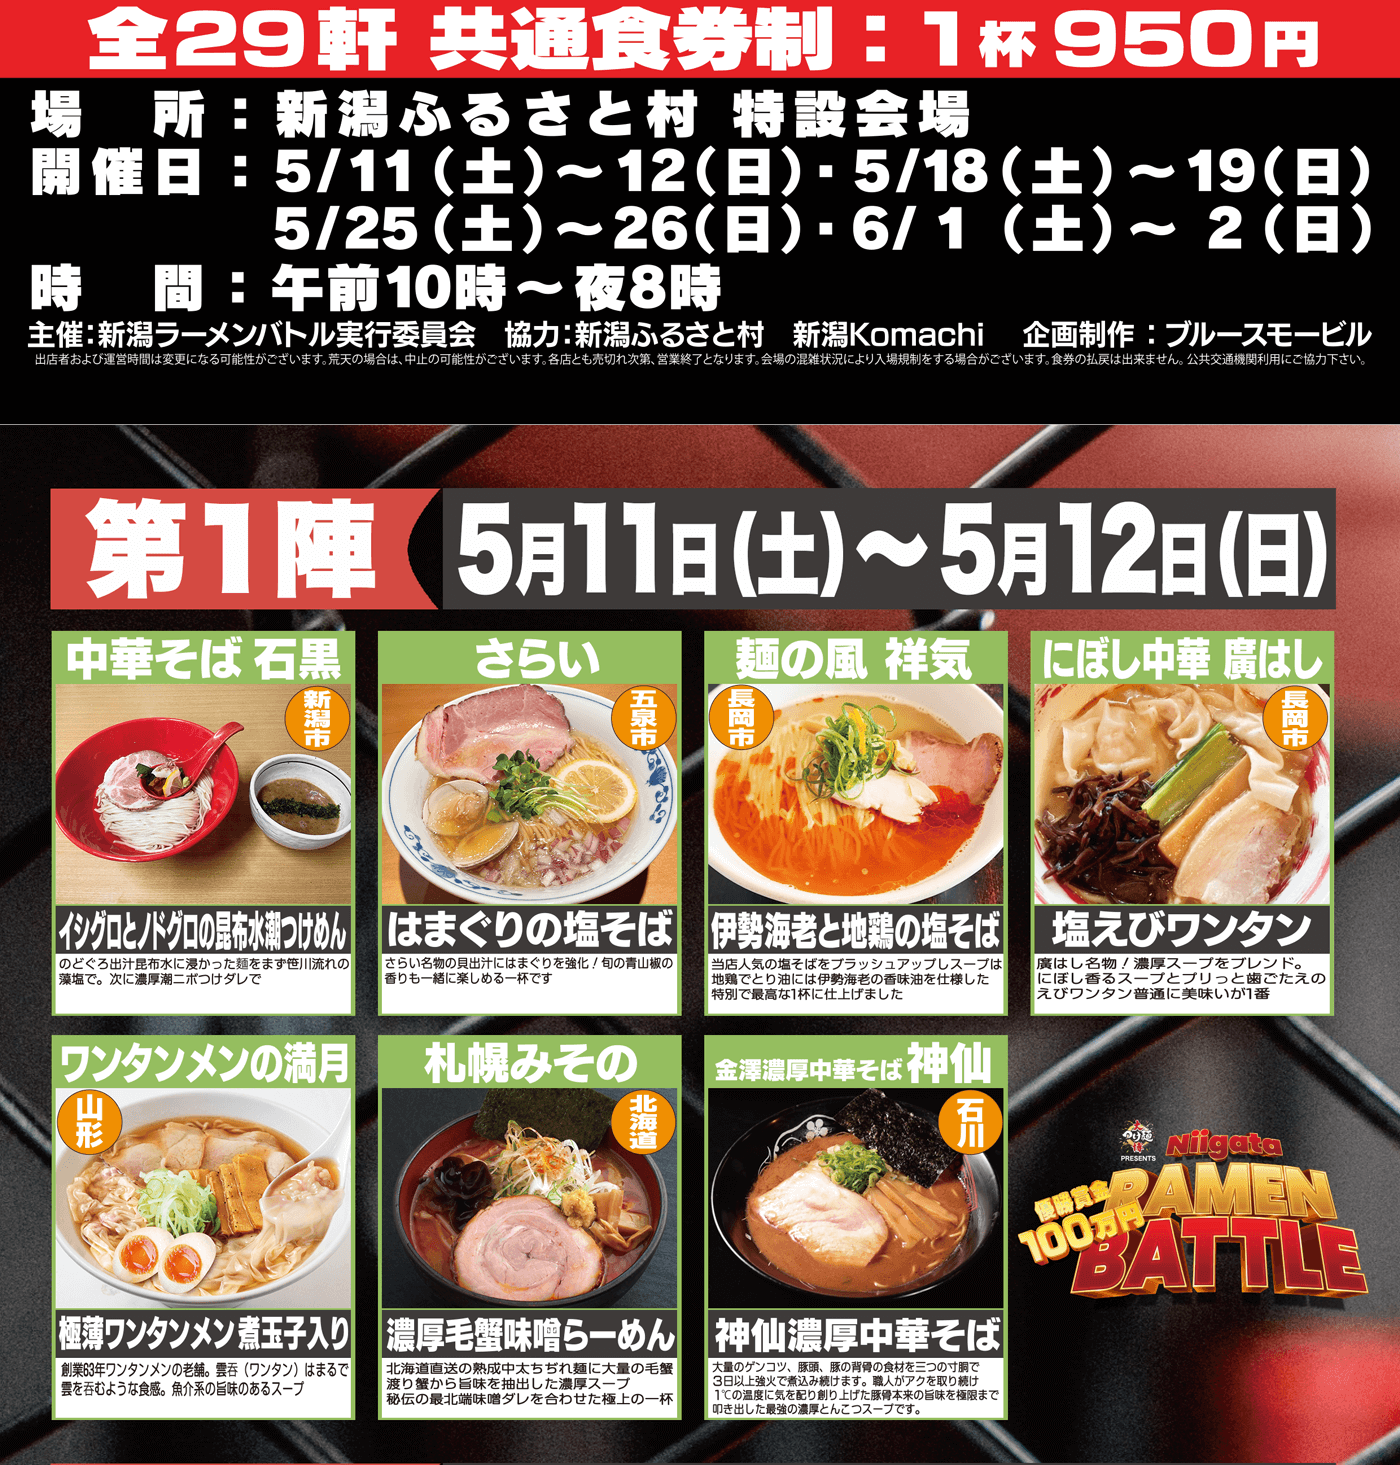 大つけ麺博Presents 新潟ラーメンバトル